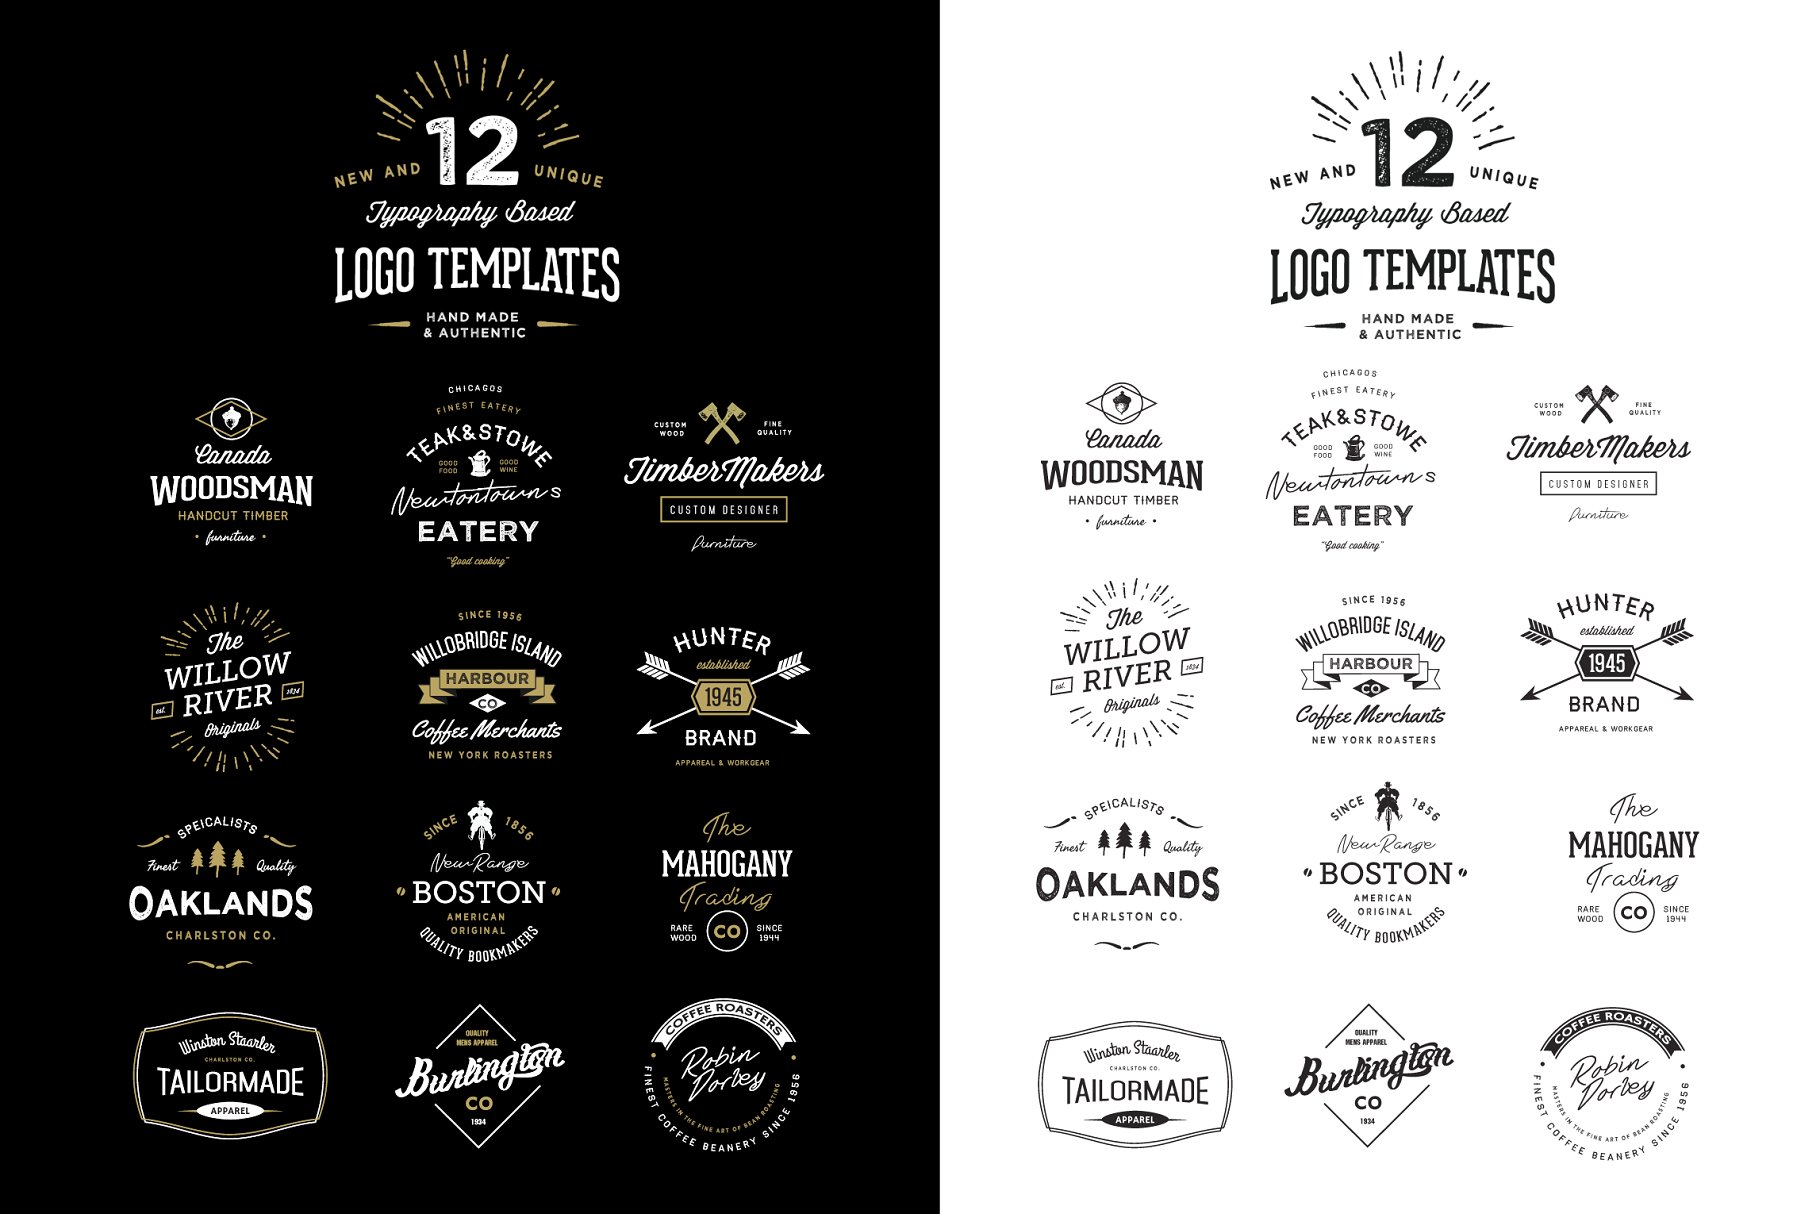 12款复古怀旧风格排版Logo模板 12 Typography Based Vintage Logos插图(1)